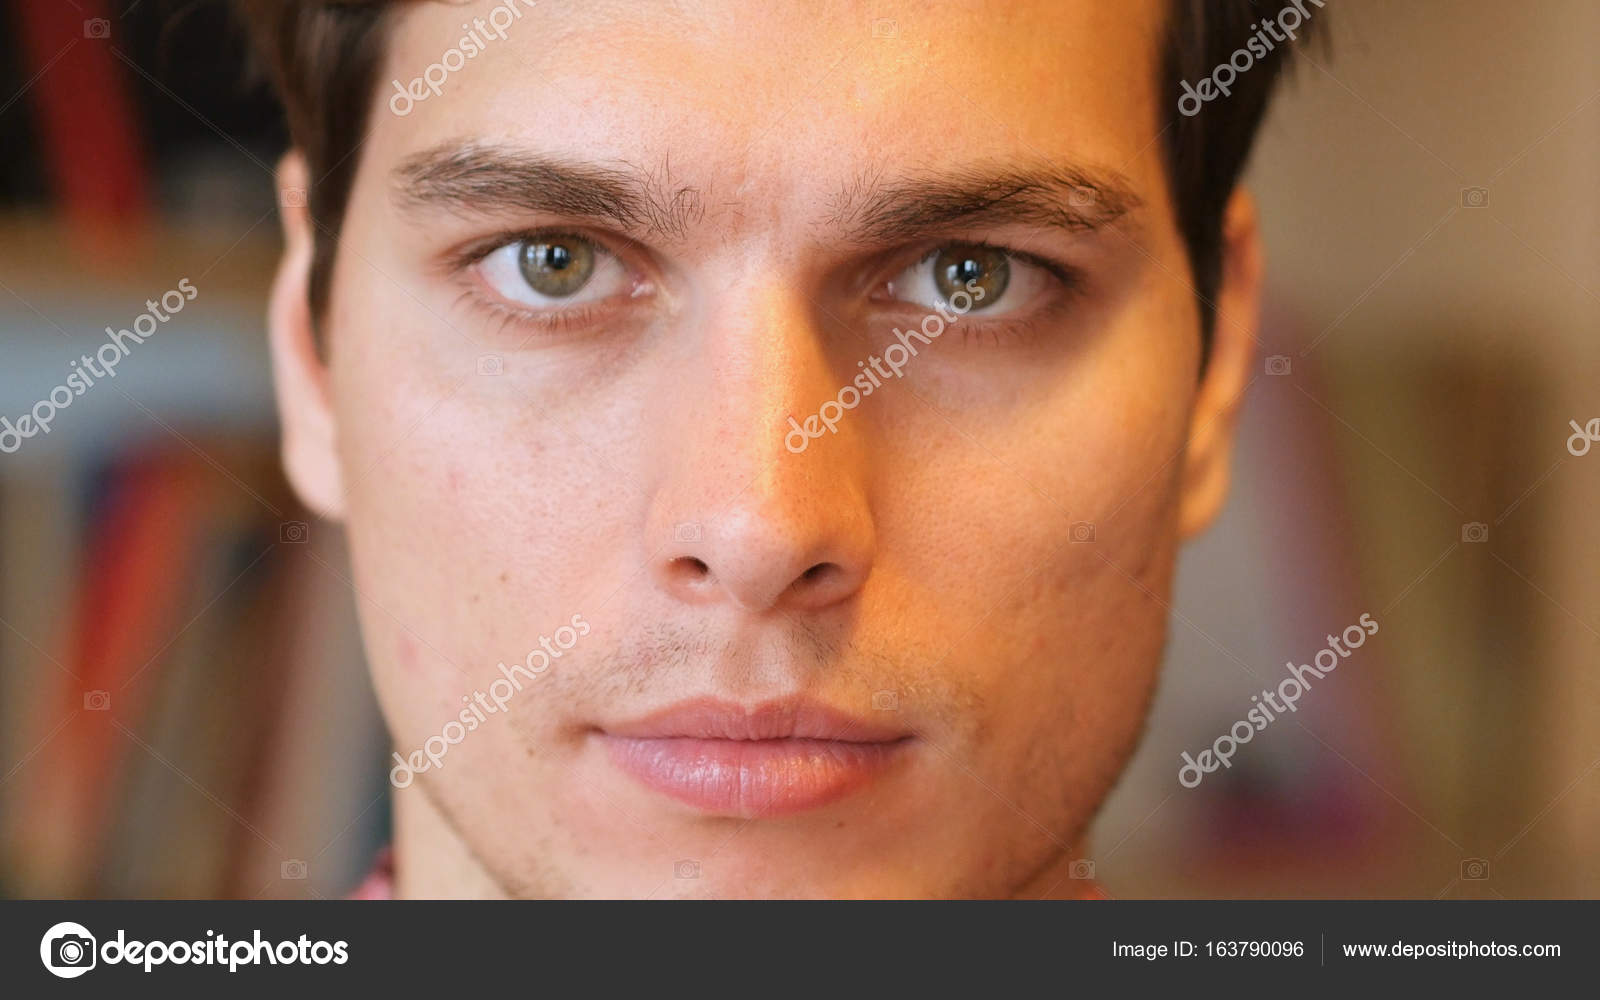 Man face closeup Stock Vector Images - Alamy